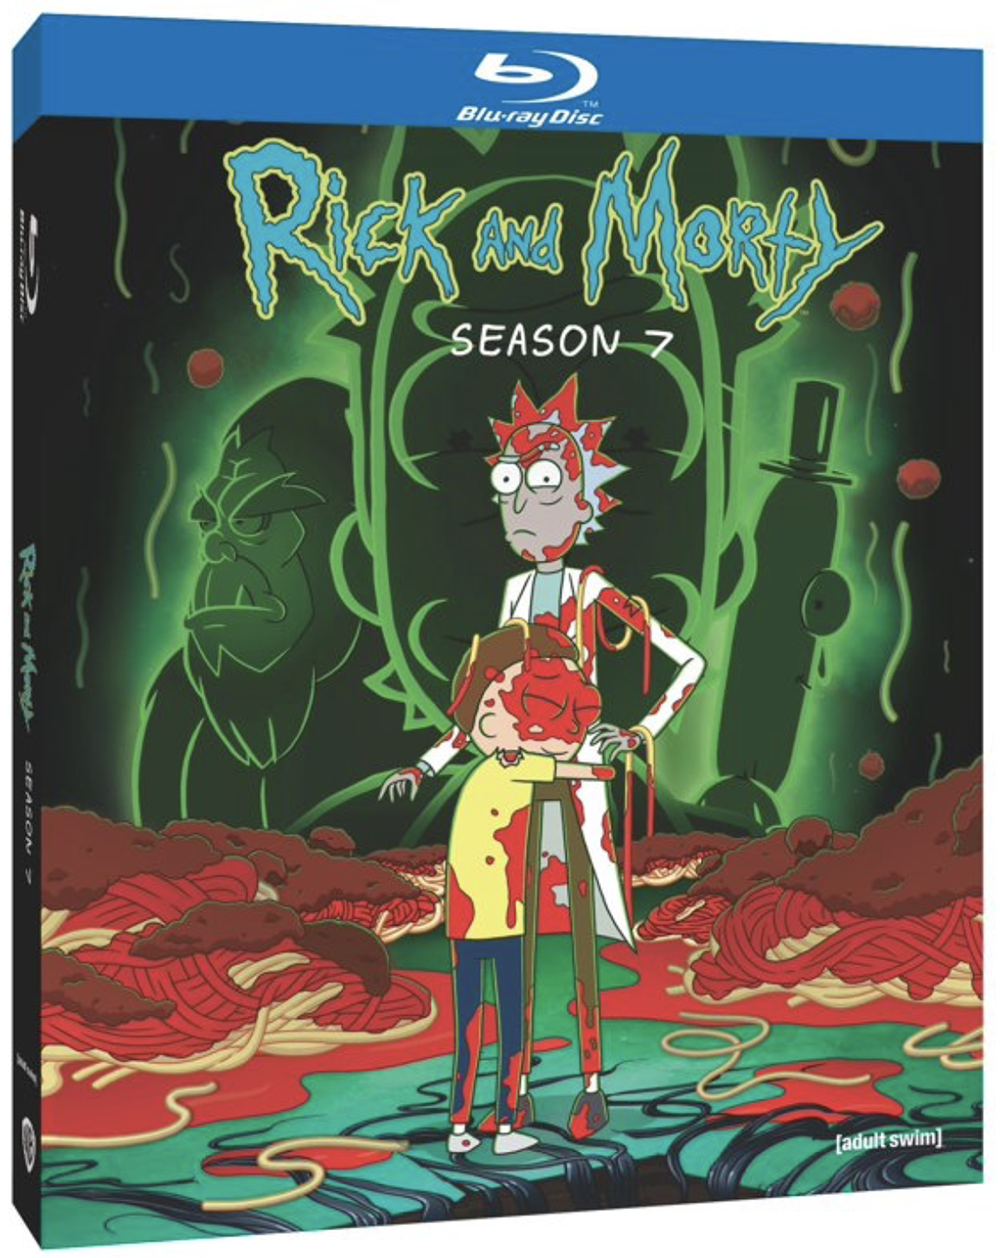 Rick and Morty - Season 7